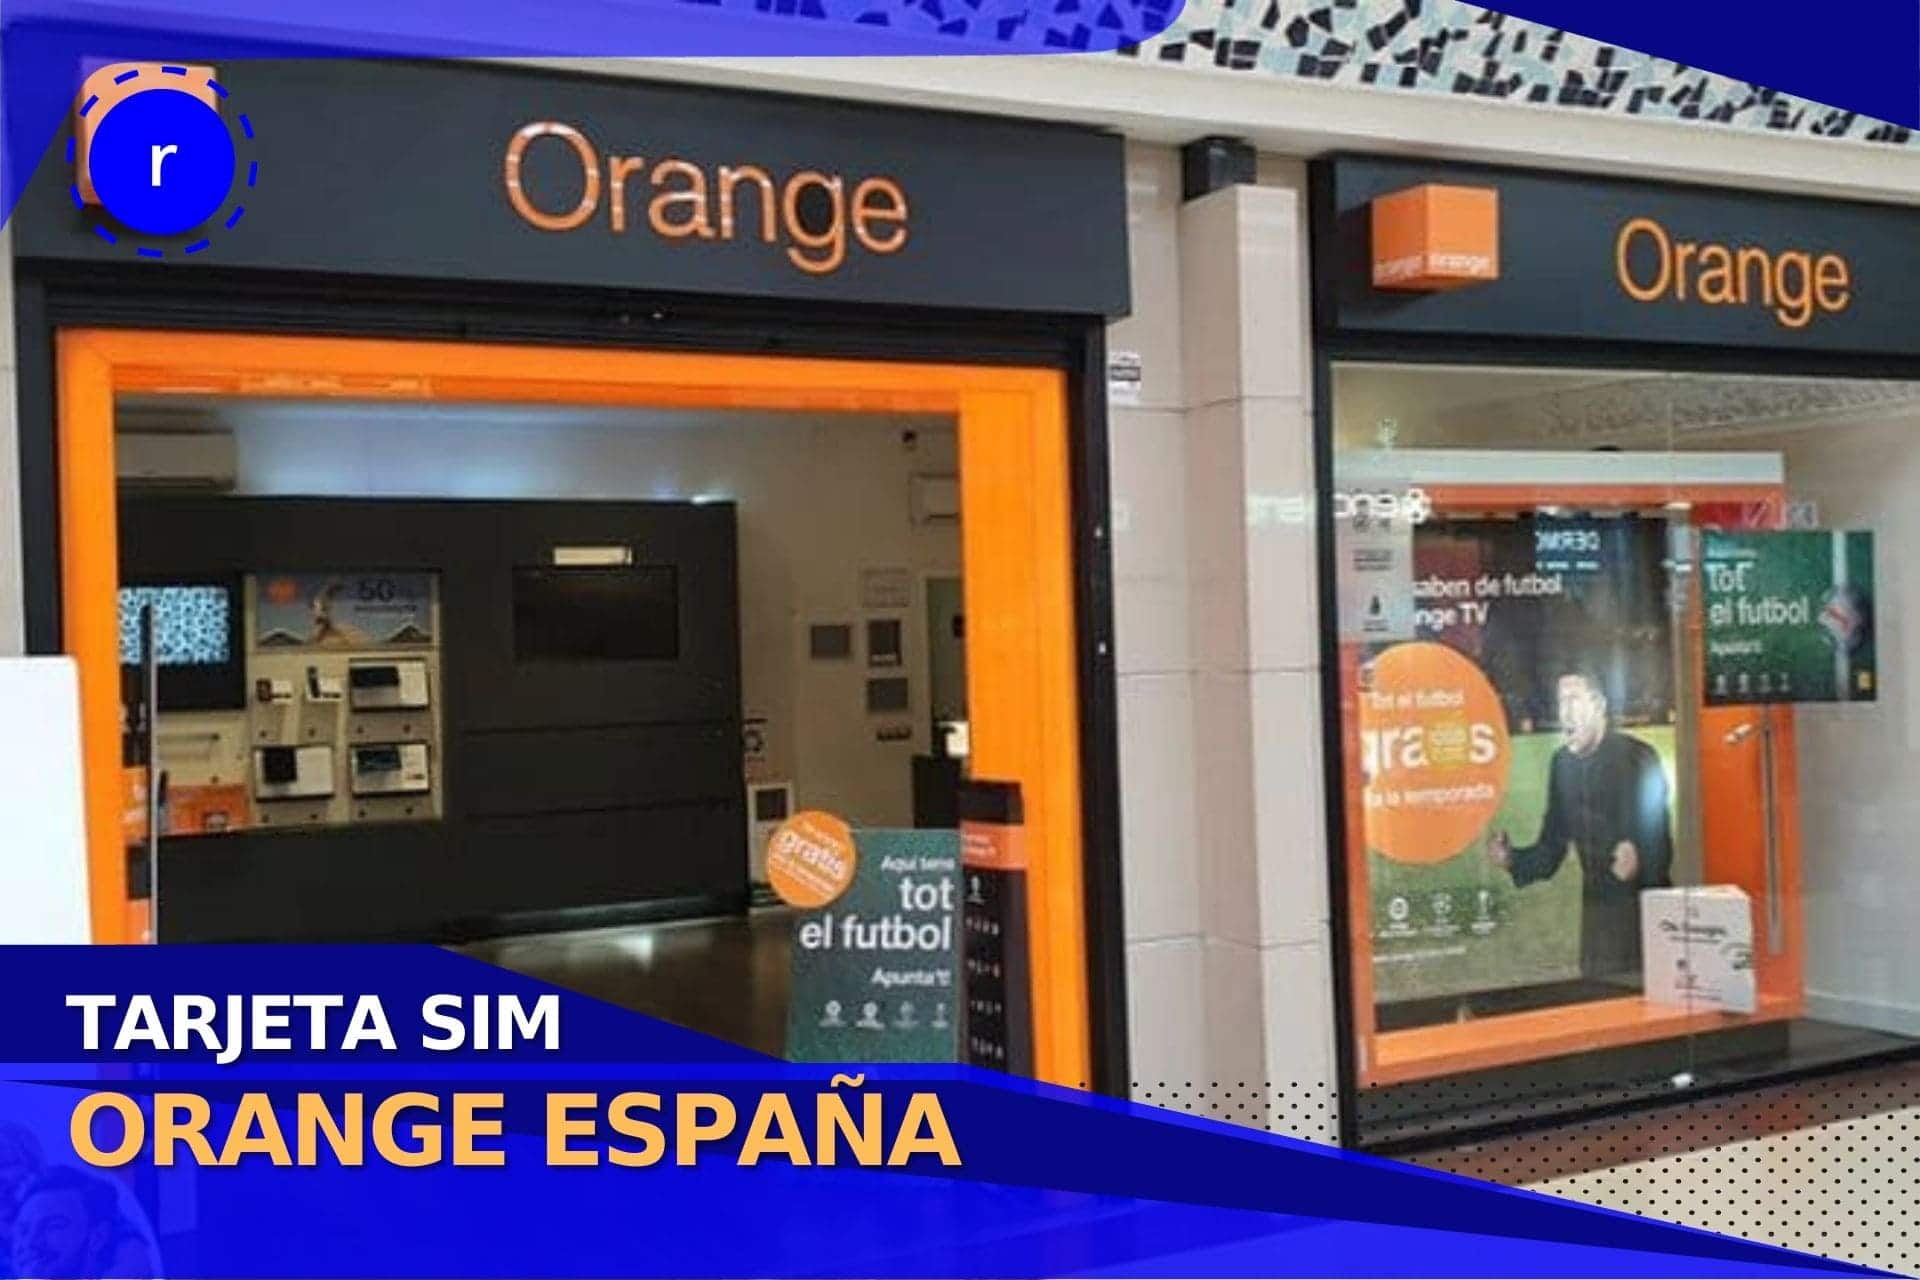 Tarjeta SIM Orange: precio, ¿cómo conseguir y activar? - Roami